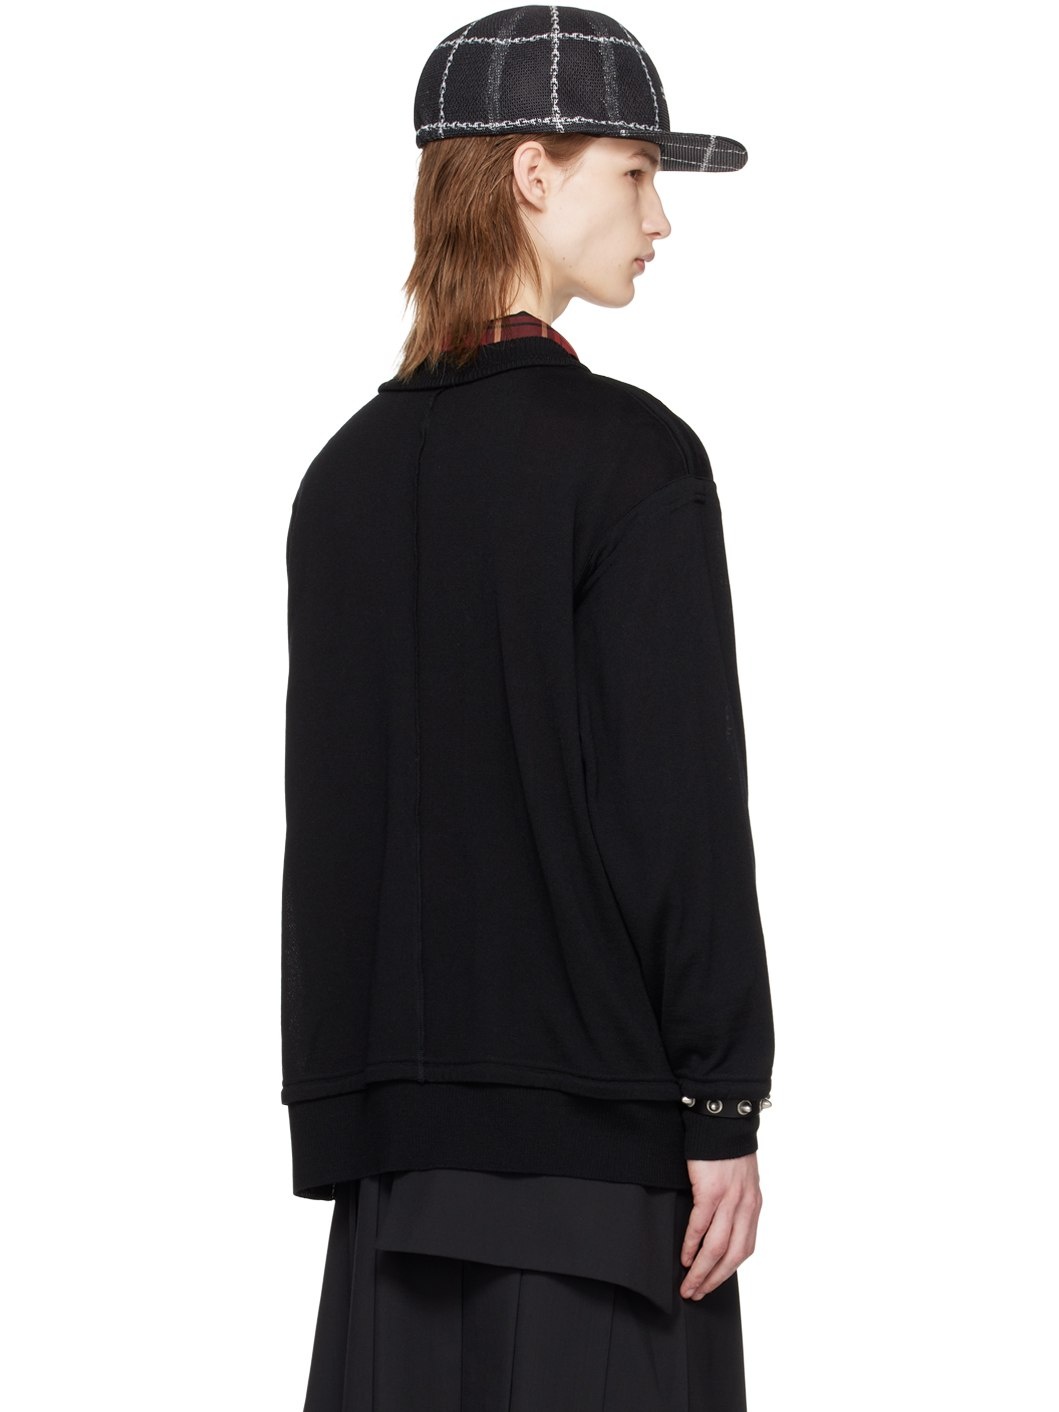 Black Exposed Seam Sweater - 3